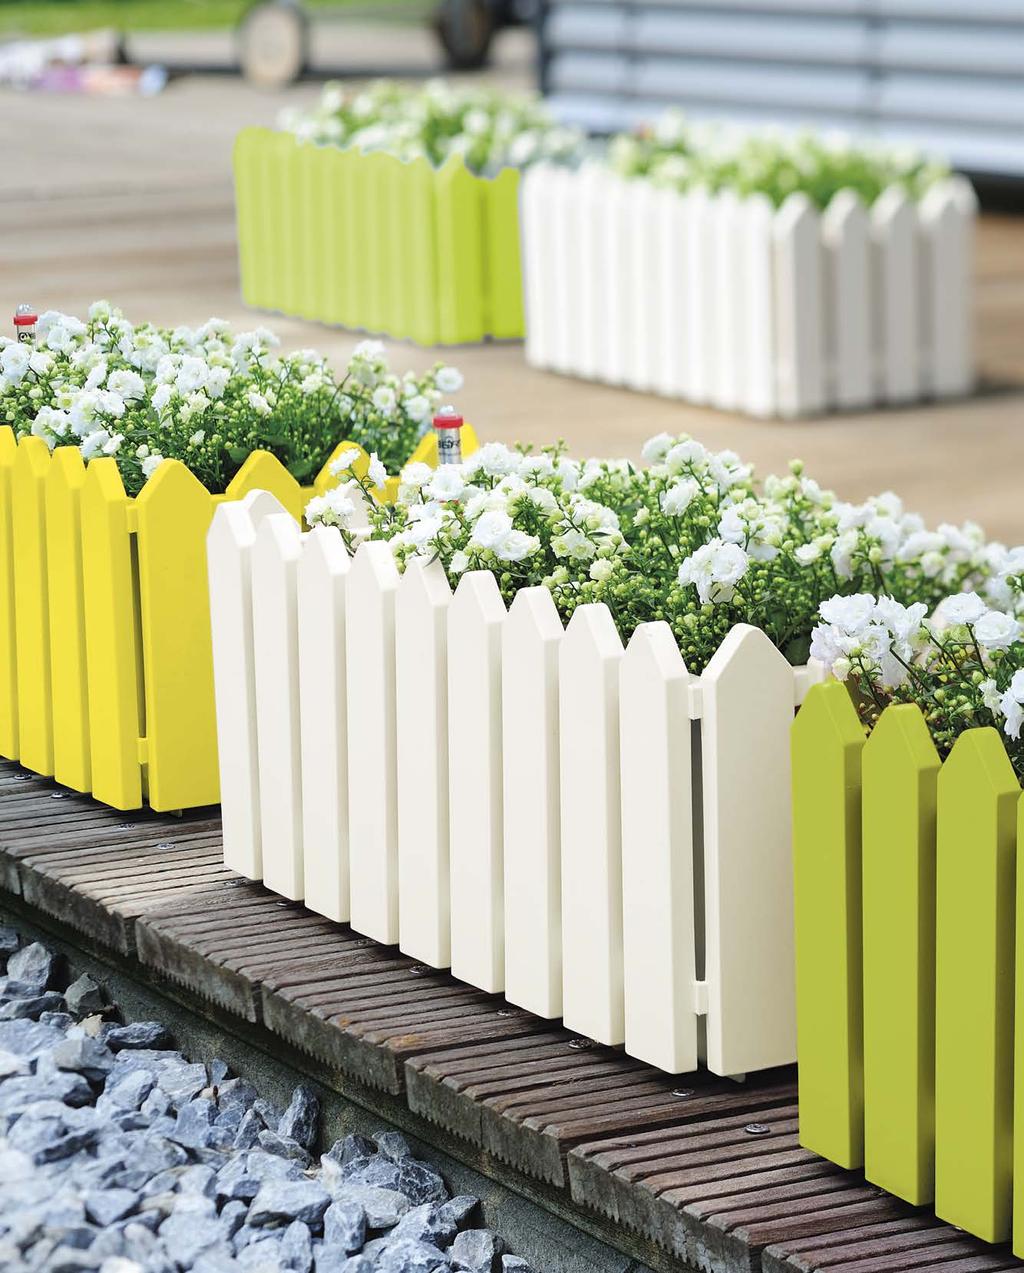 Klassisch und komfortabel. Der Blumenkasten mit Bewässerungssystem in der beliebten Westerland-Optik verfügt über ein großes Erd- und Wasservolumen. In trendigen frischen Farben erhältlich.